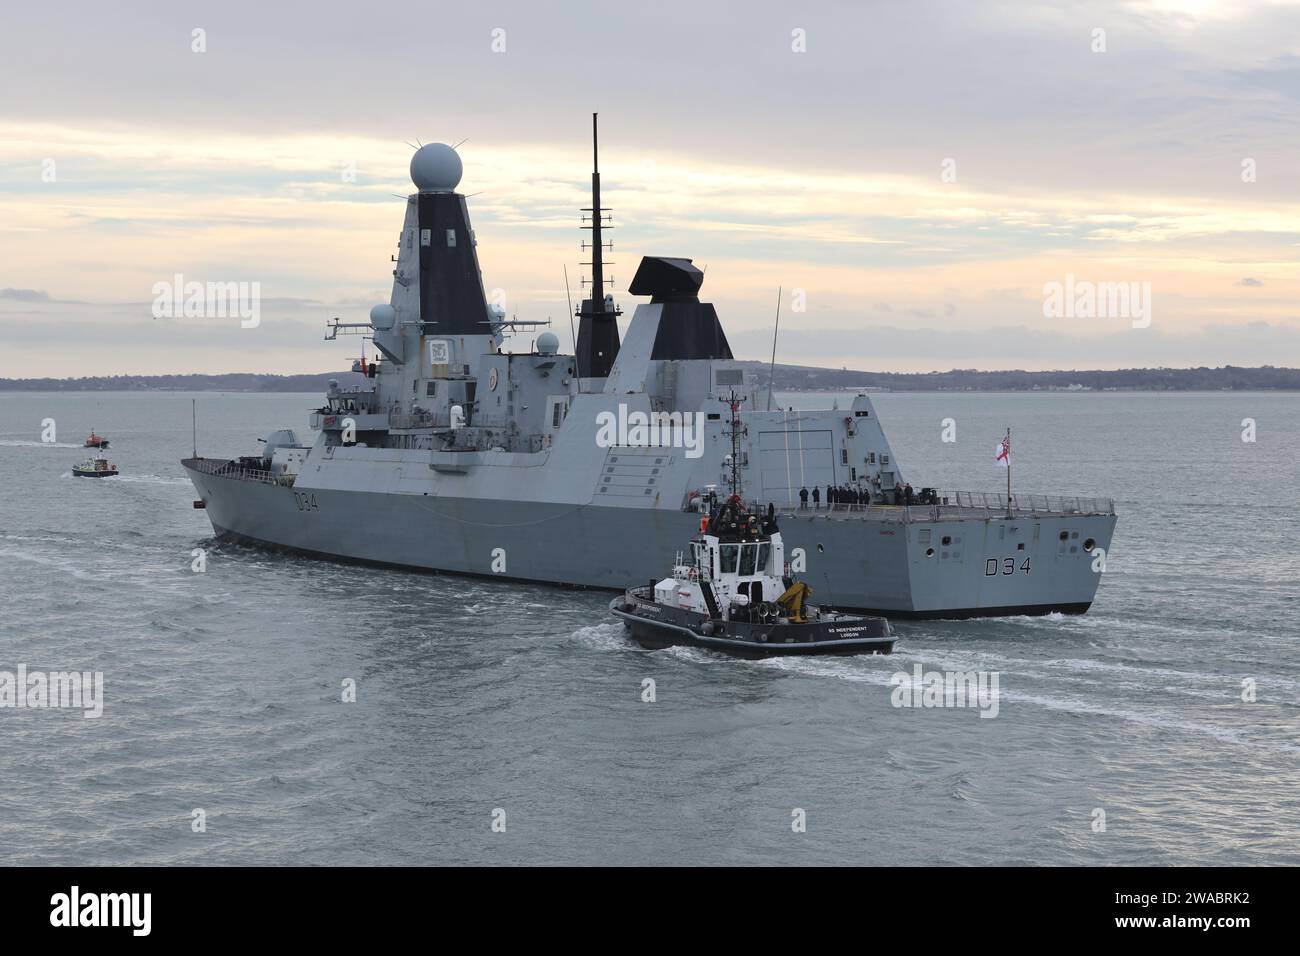 Der Royal Navy Zerstörer HMS DIAMOND segelt von seinem Heimathafen aus und beginnt einen Einsatz, der ihn ins östliche Mittelmeer bringt Stockfoto